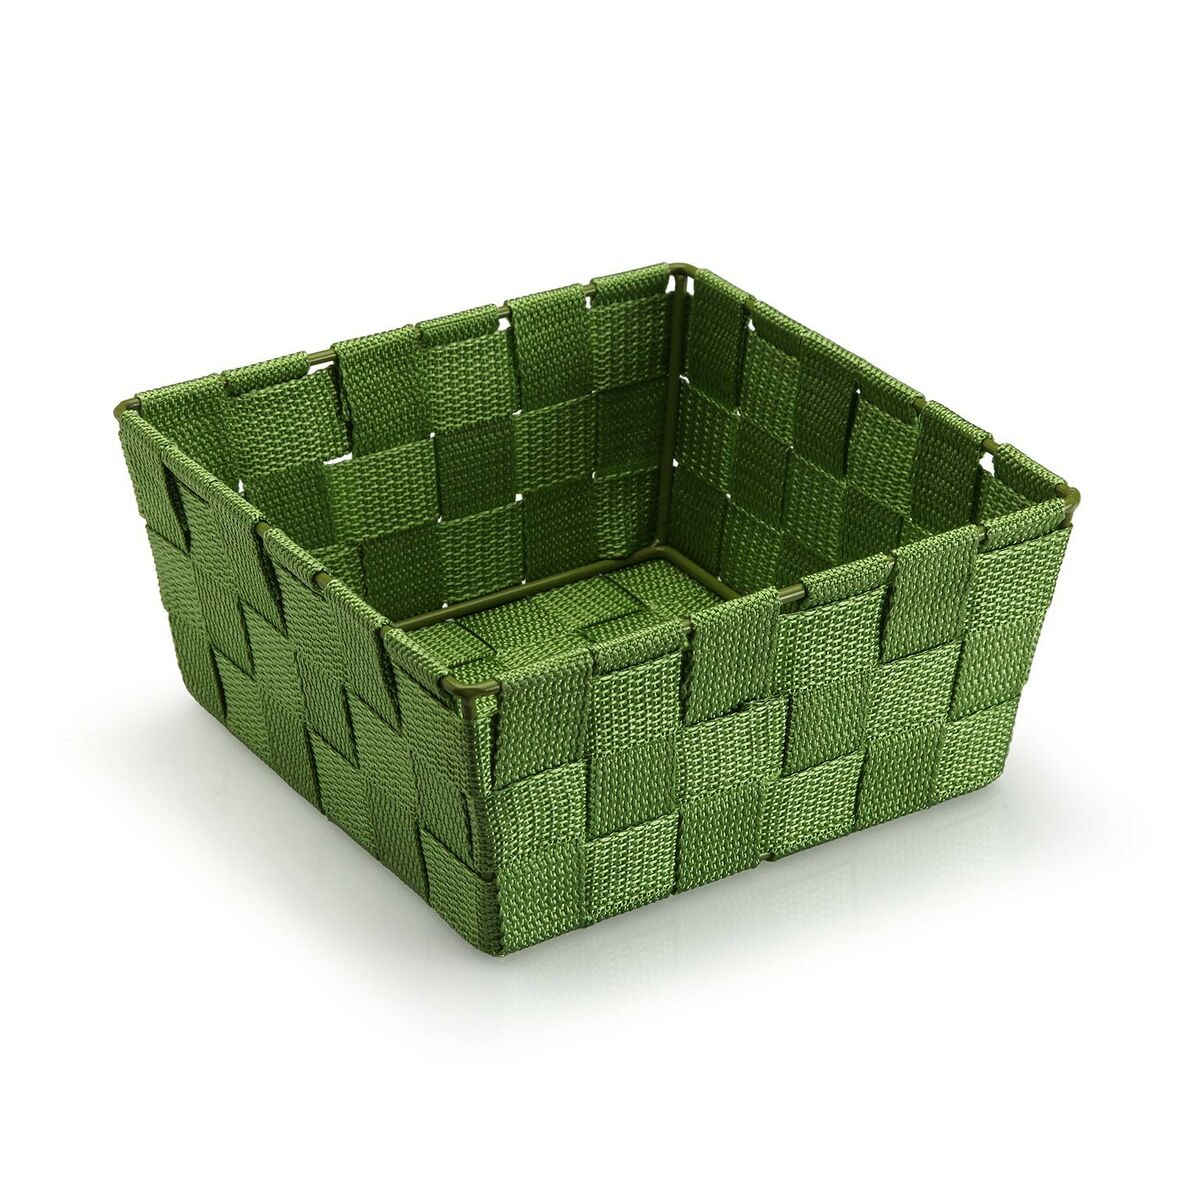 Basket Versa Medium Dark green Textile 19 x 9 x 19 cm